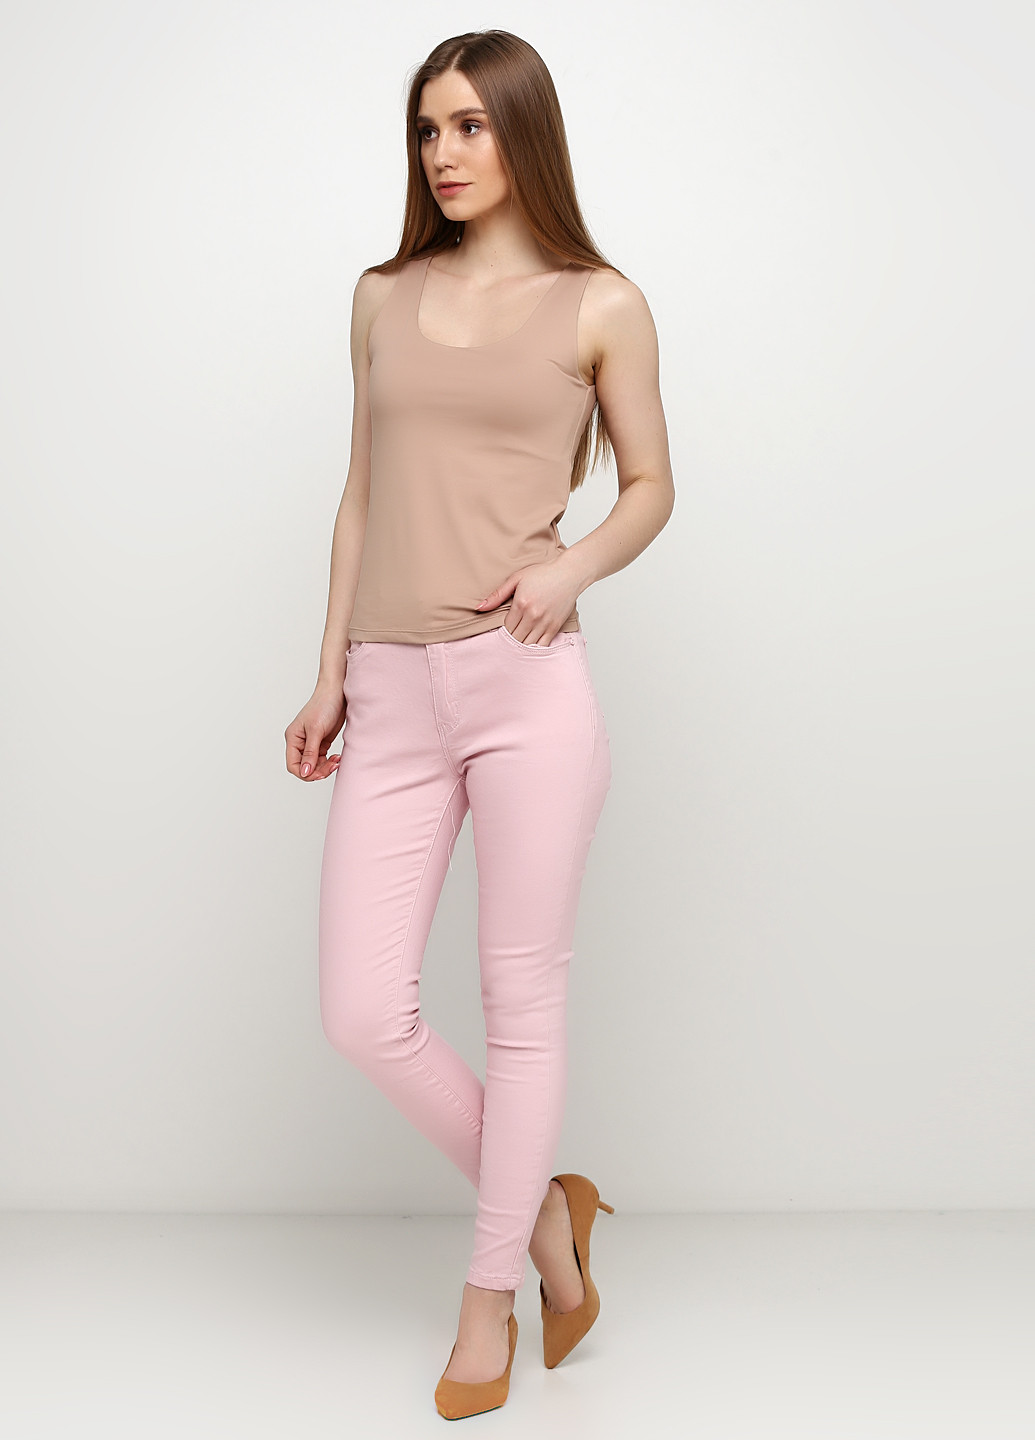 Светло-розовые демисезонные зауженные джинсы Ds Fashion